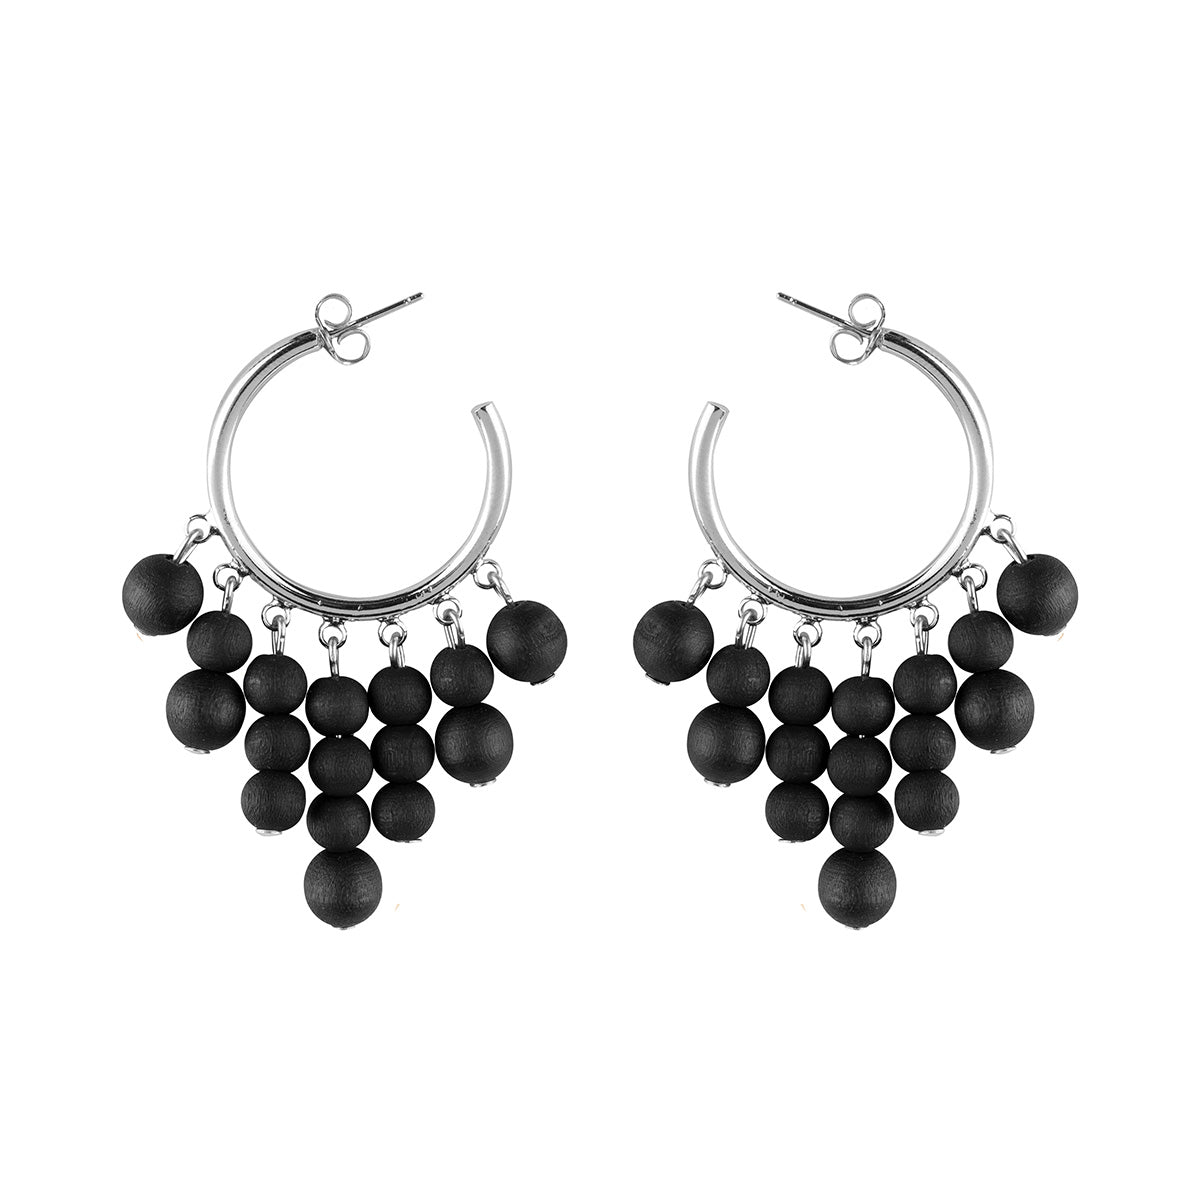 Gisella earrings, black